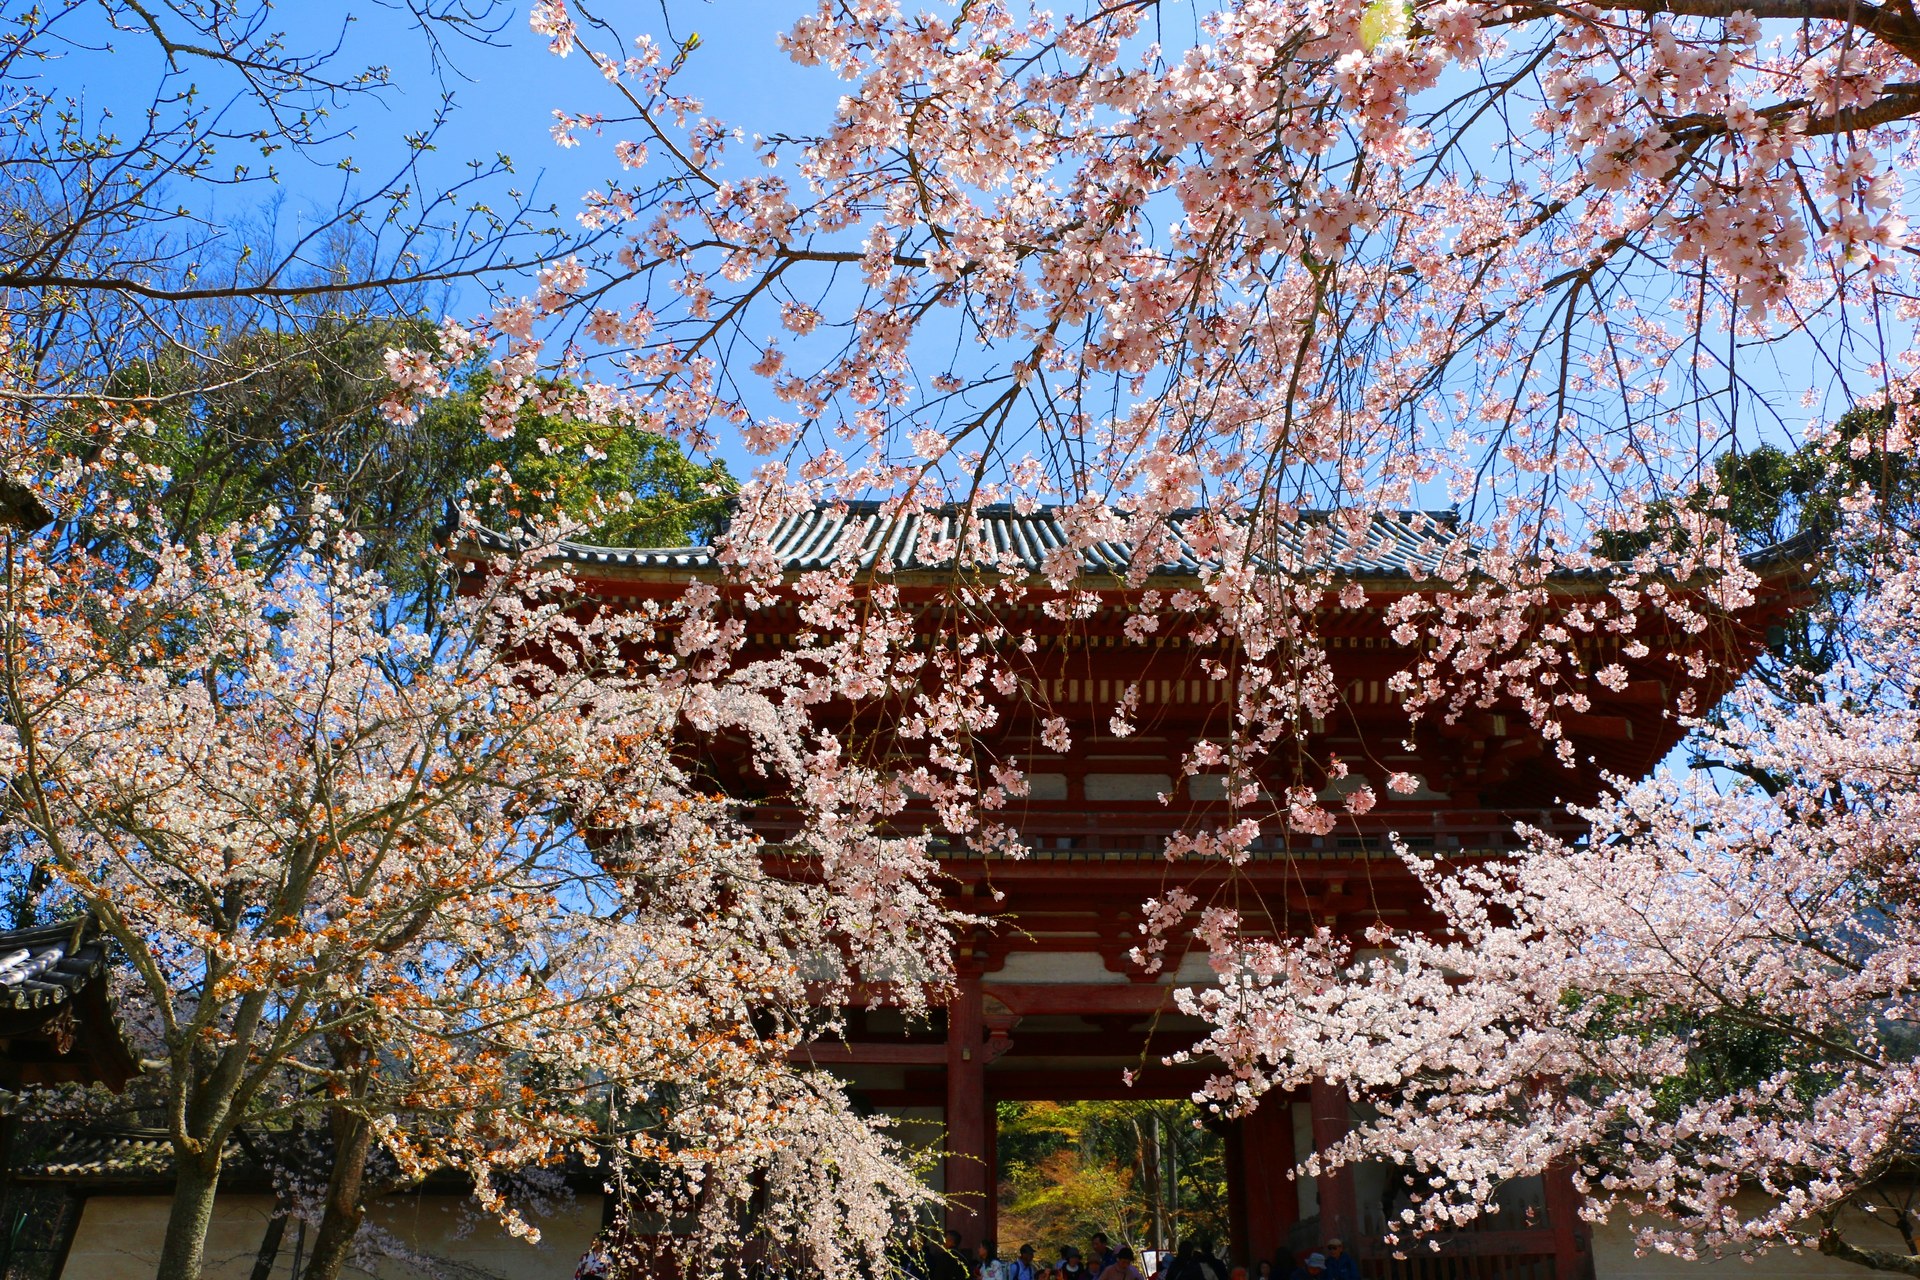 日本の風景 醍醐寺桜 壁紙19x1280 壁紙館